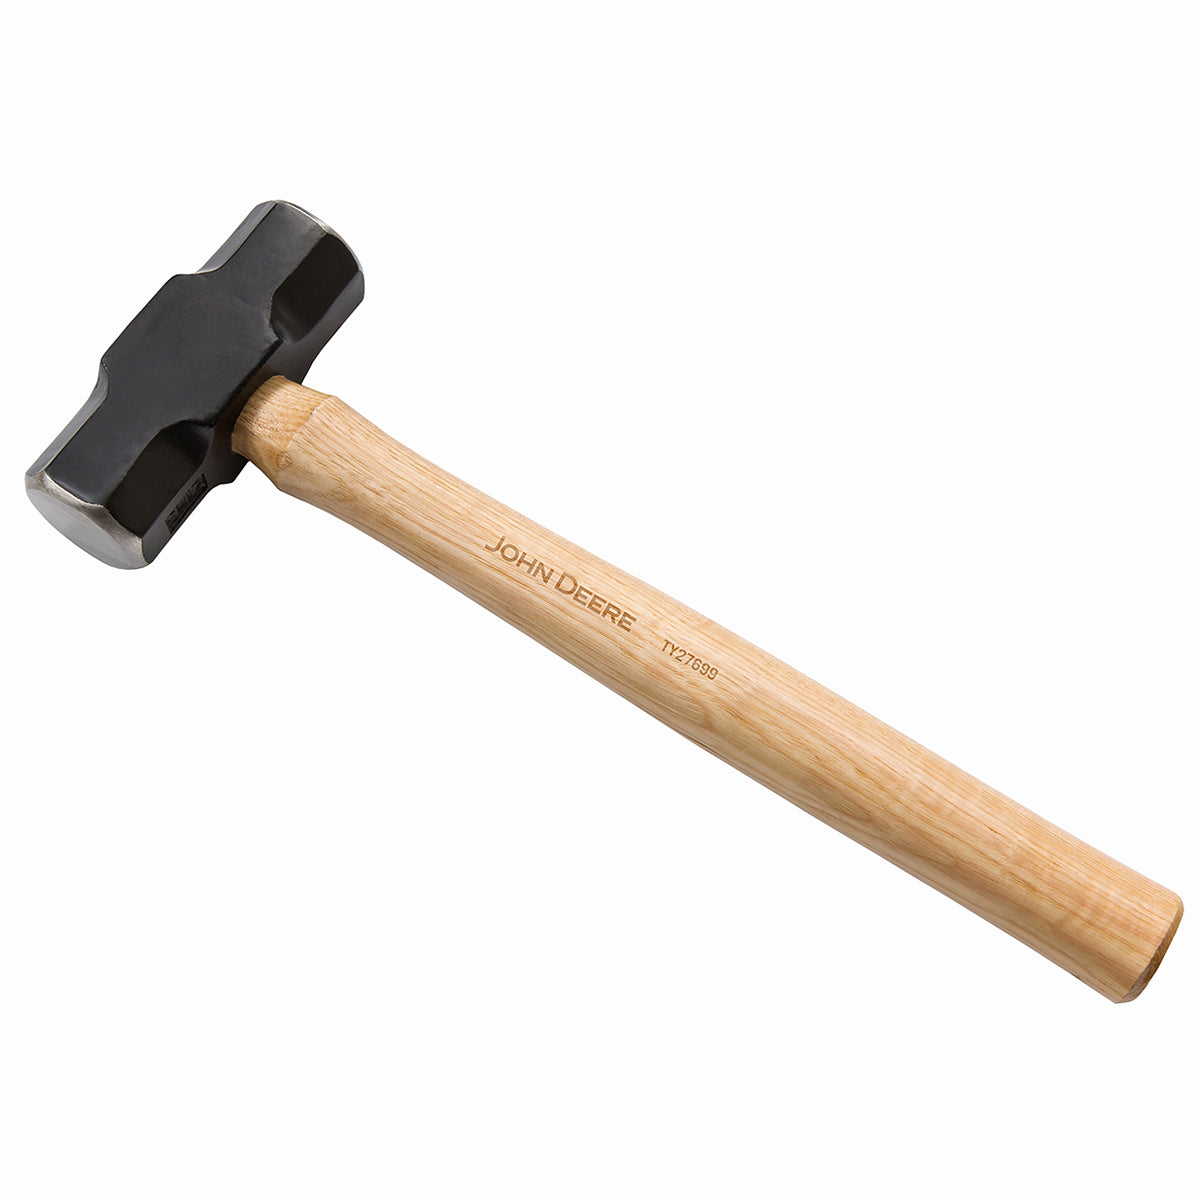 John Deere 4lb Sledge Hammer